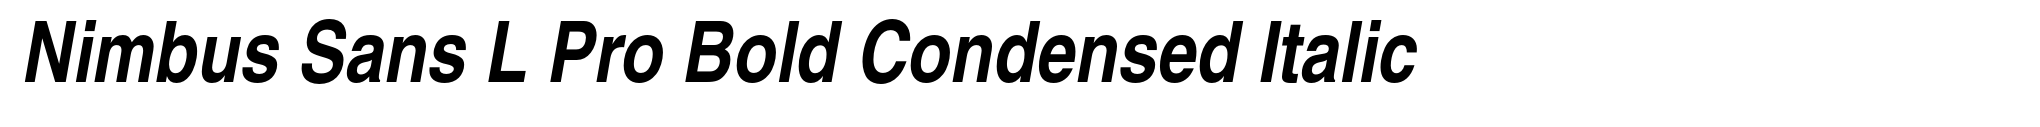 Nimbus Sans L Pro Bold Condensed Italic image